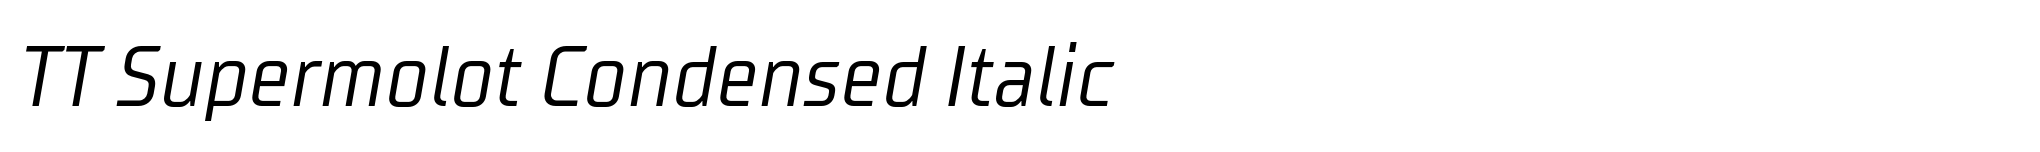 TT Supermolot Condensed Italic image